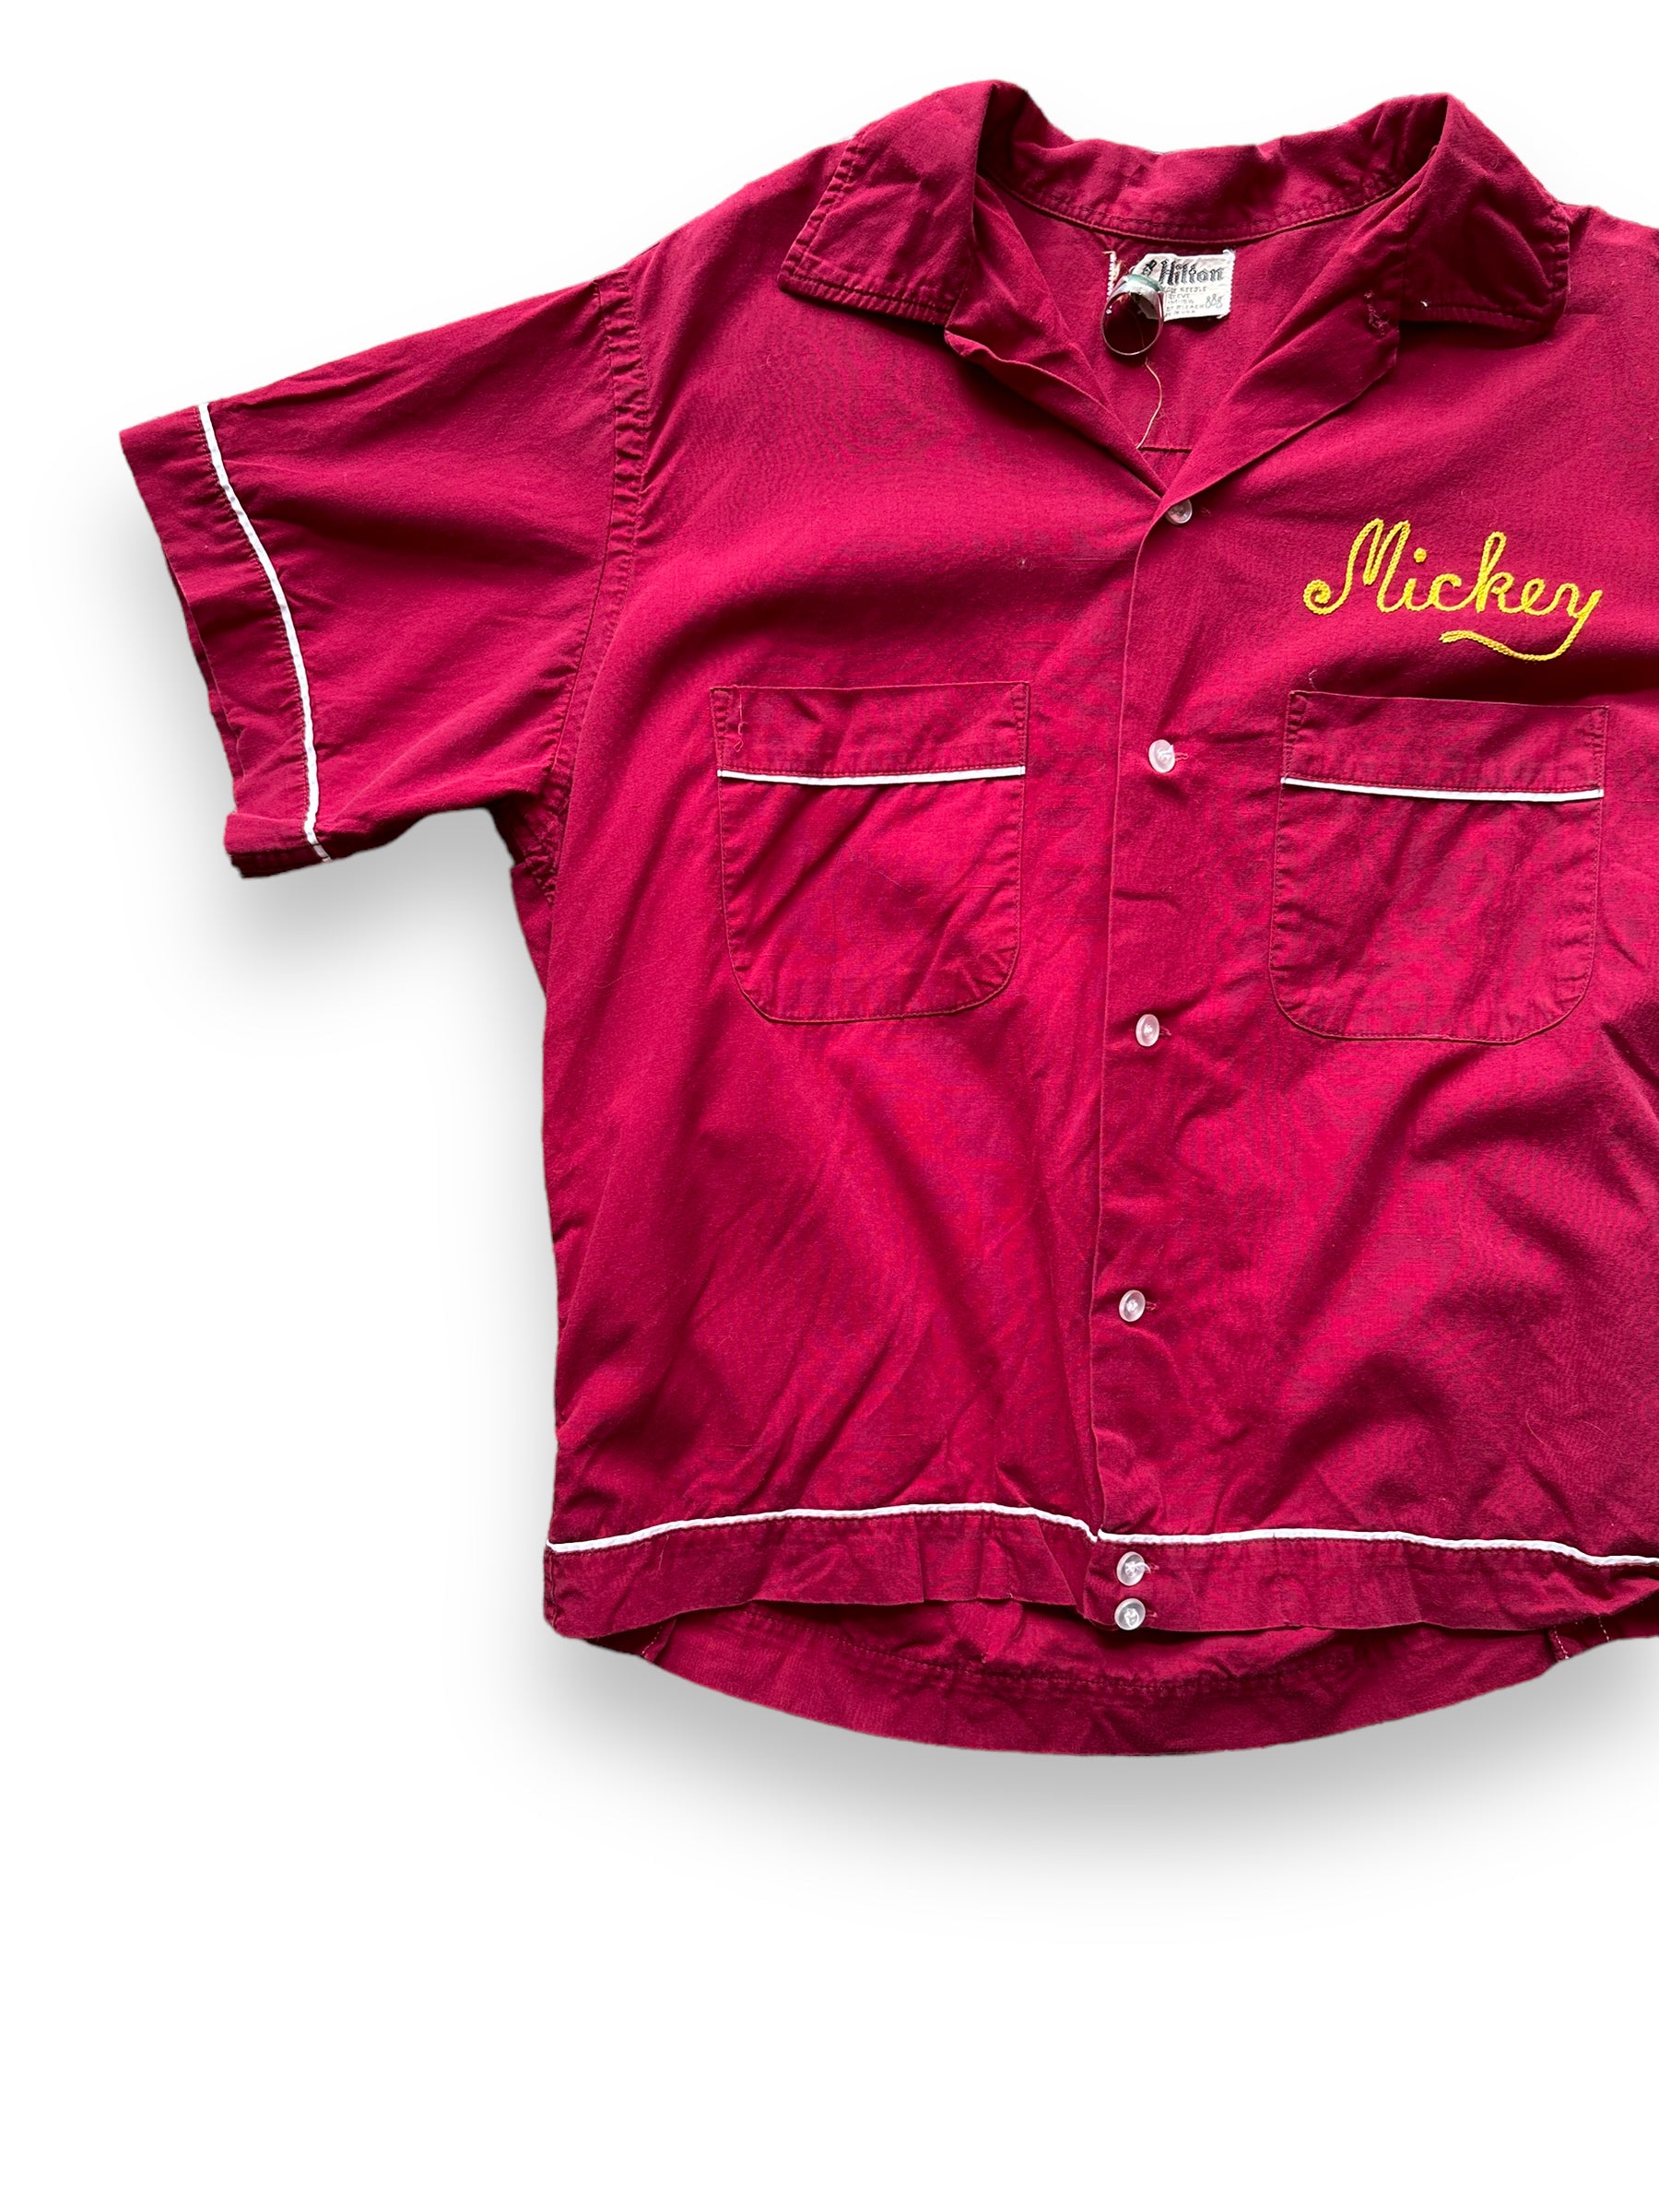 Vintage Holly Lanes O'Dea Lass Seattle Bowling Shirt SZ M